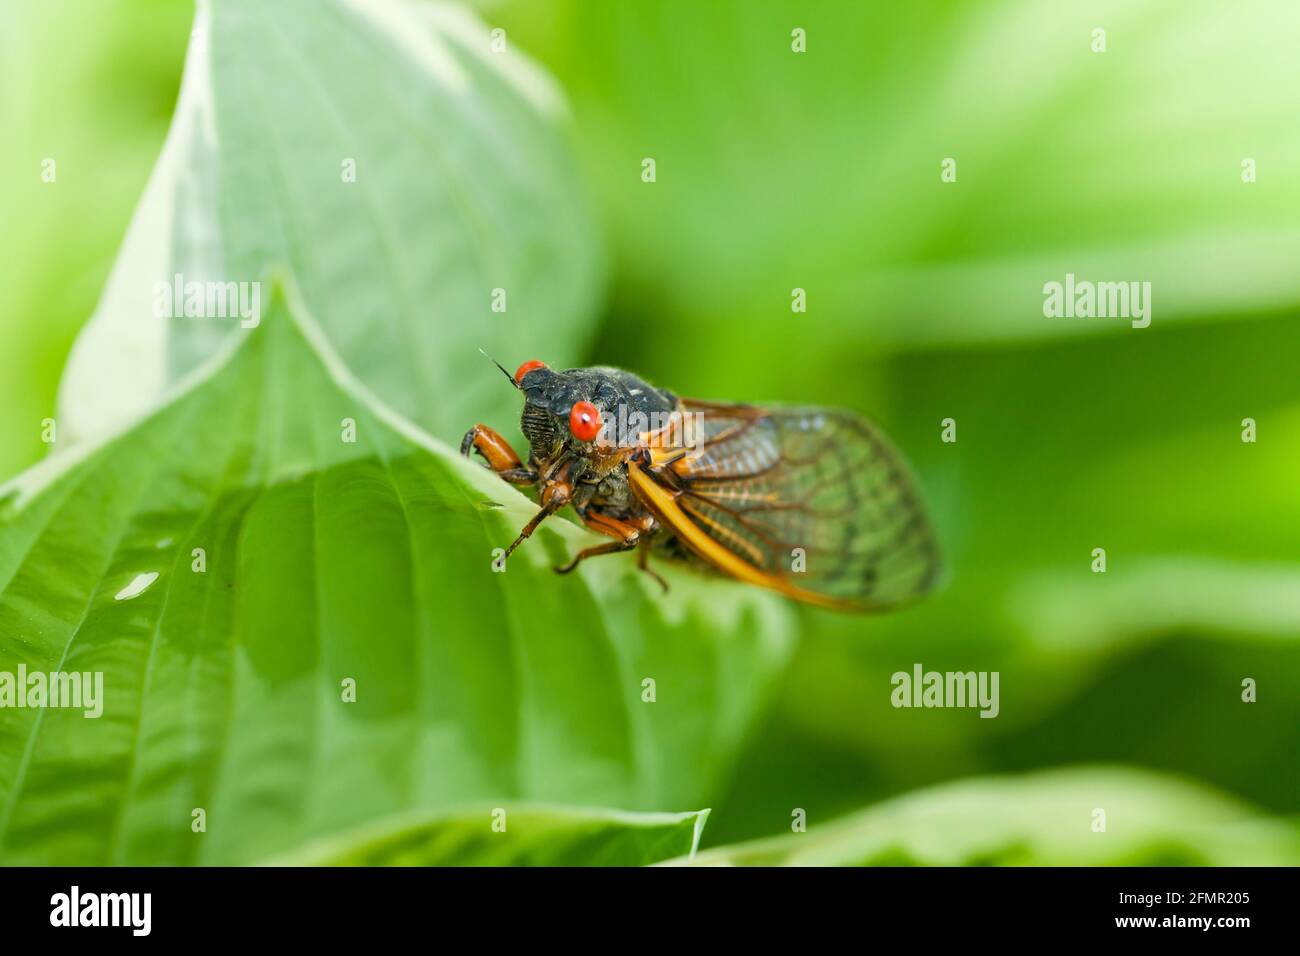 Brood X cicada, May 2021 - Virginia USA Stock Photo